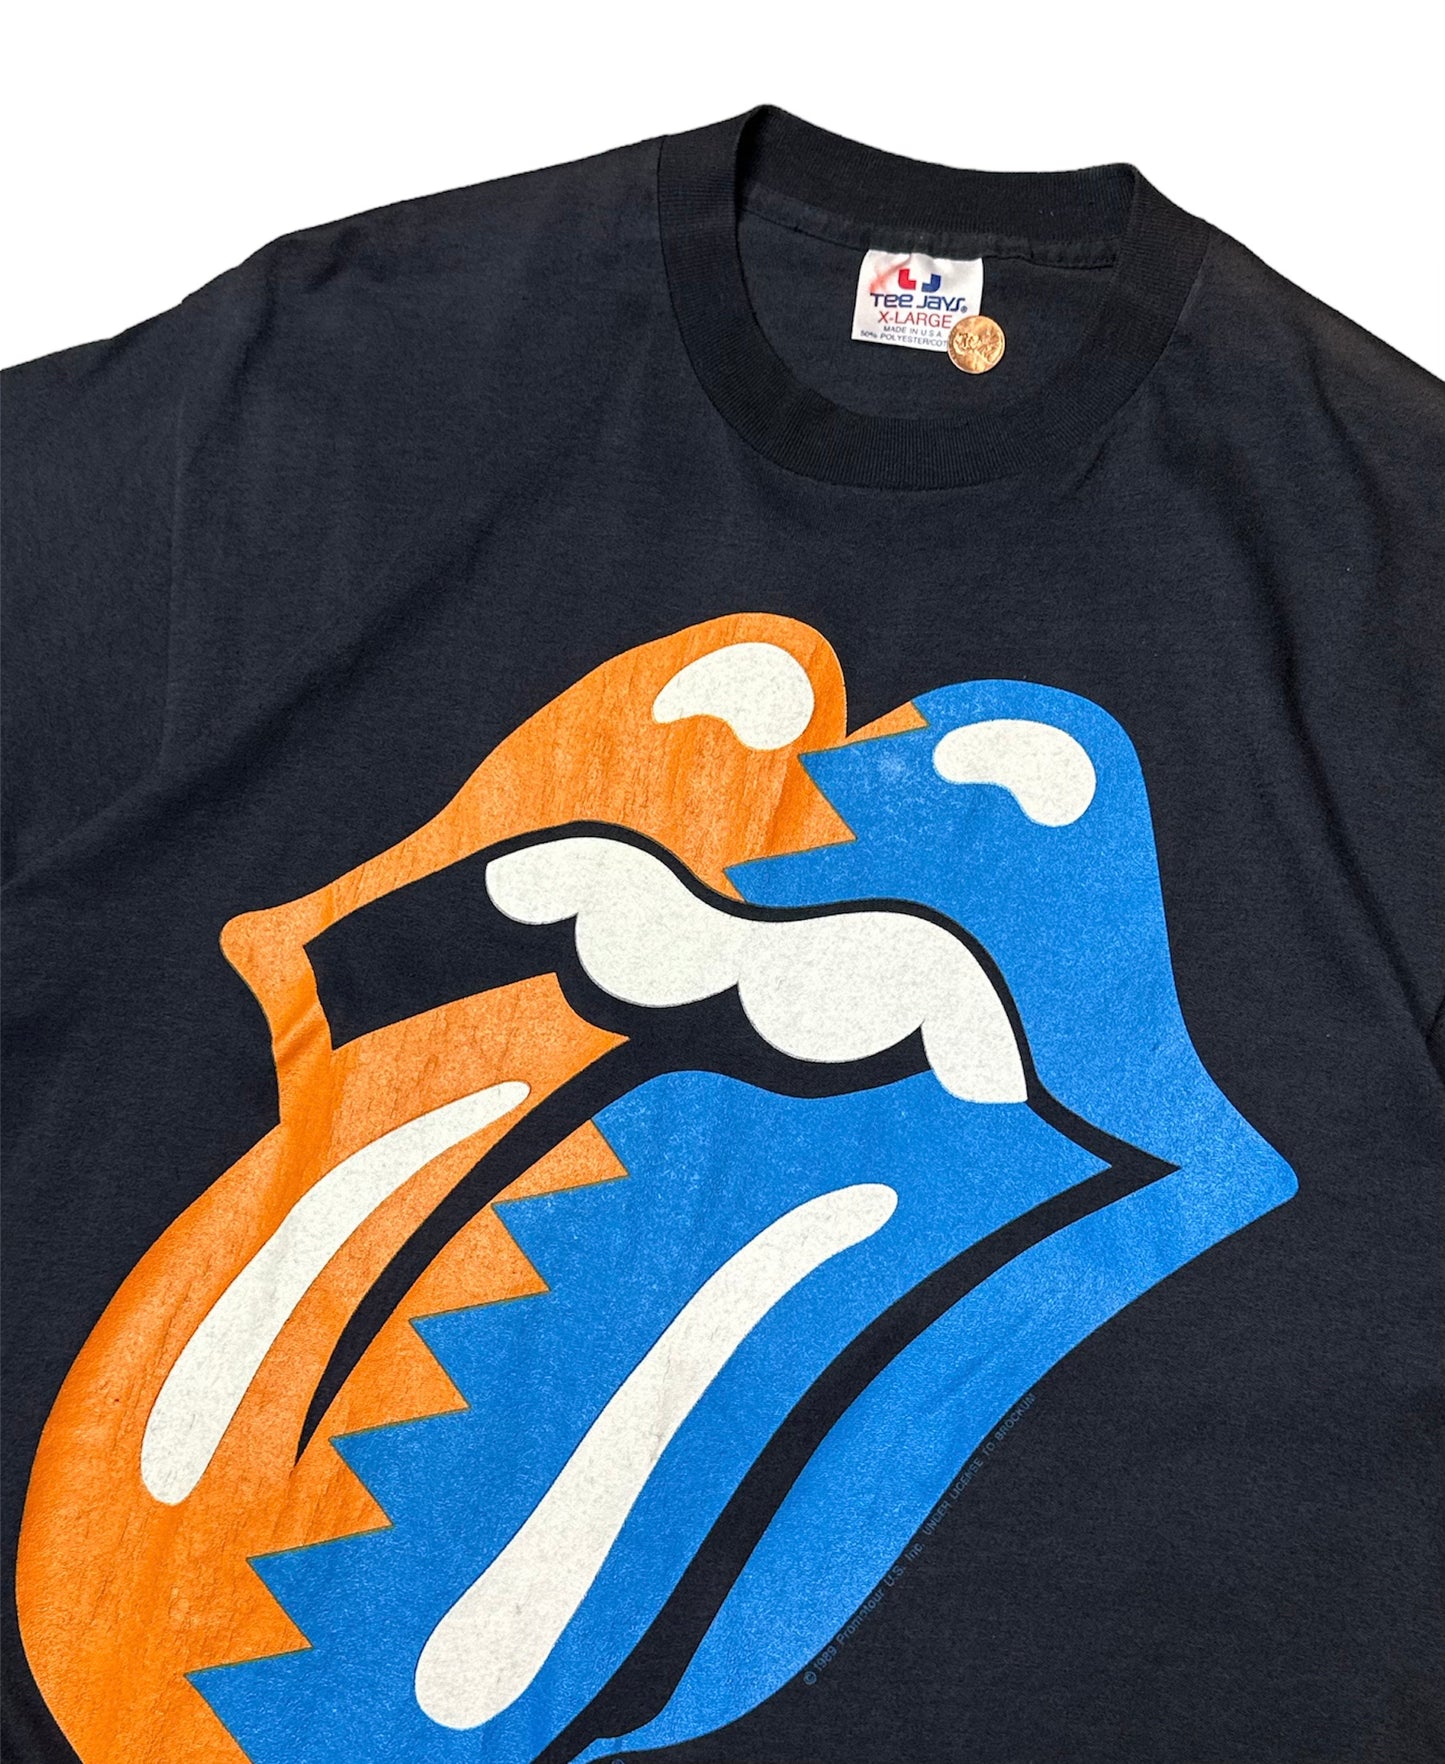 1989 Rolling Stones Tour T-Shirt